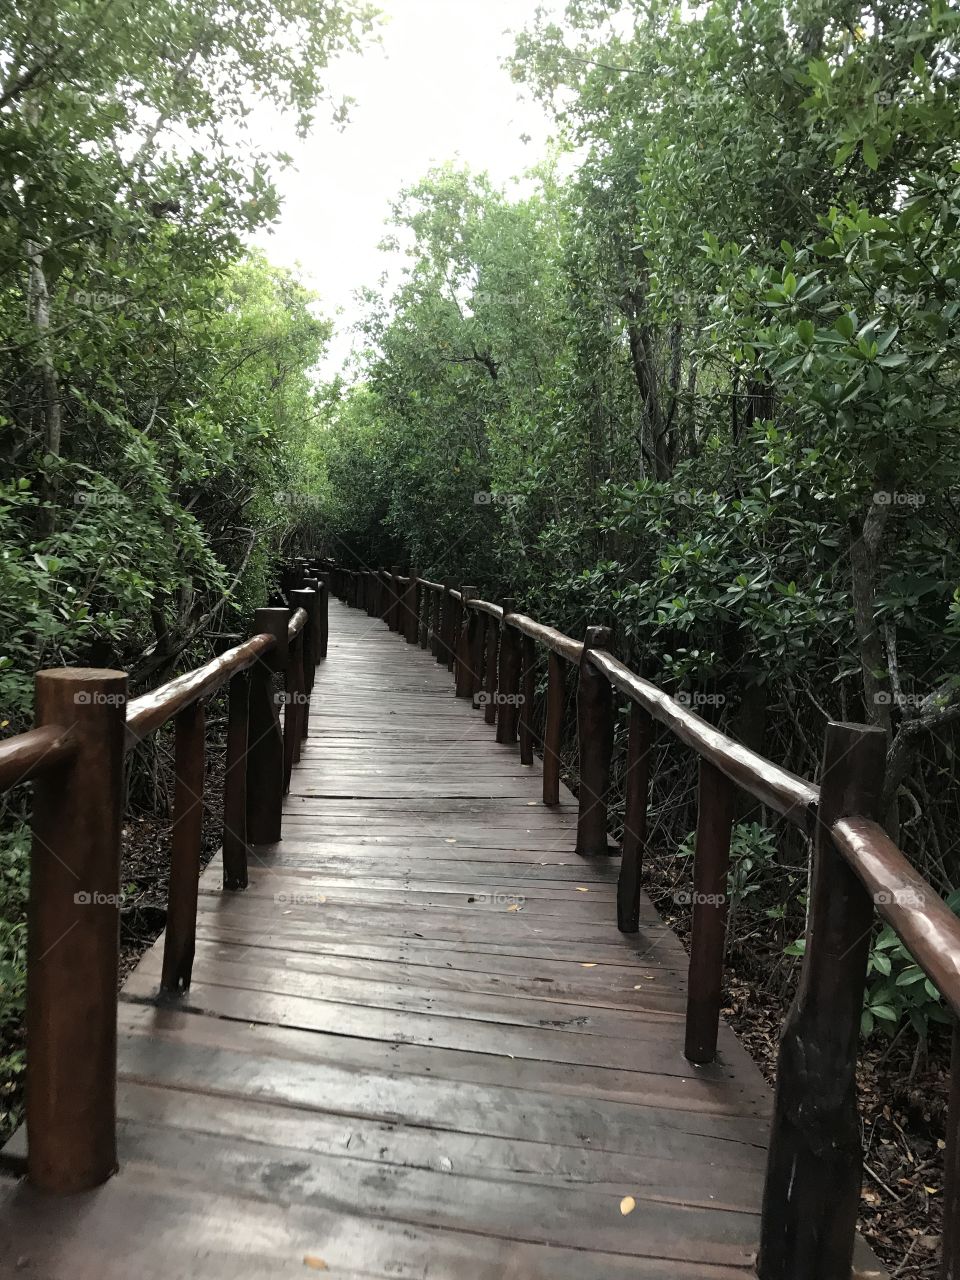 Walkway through nature